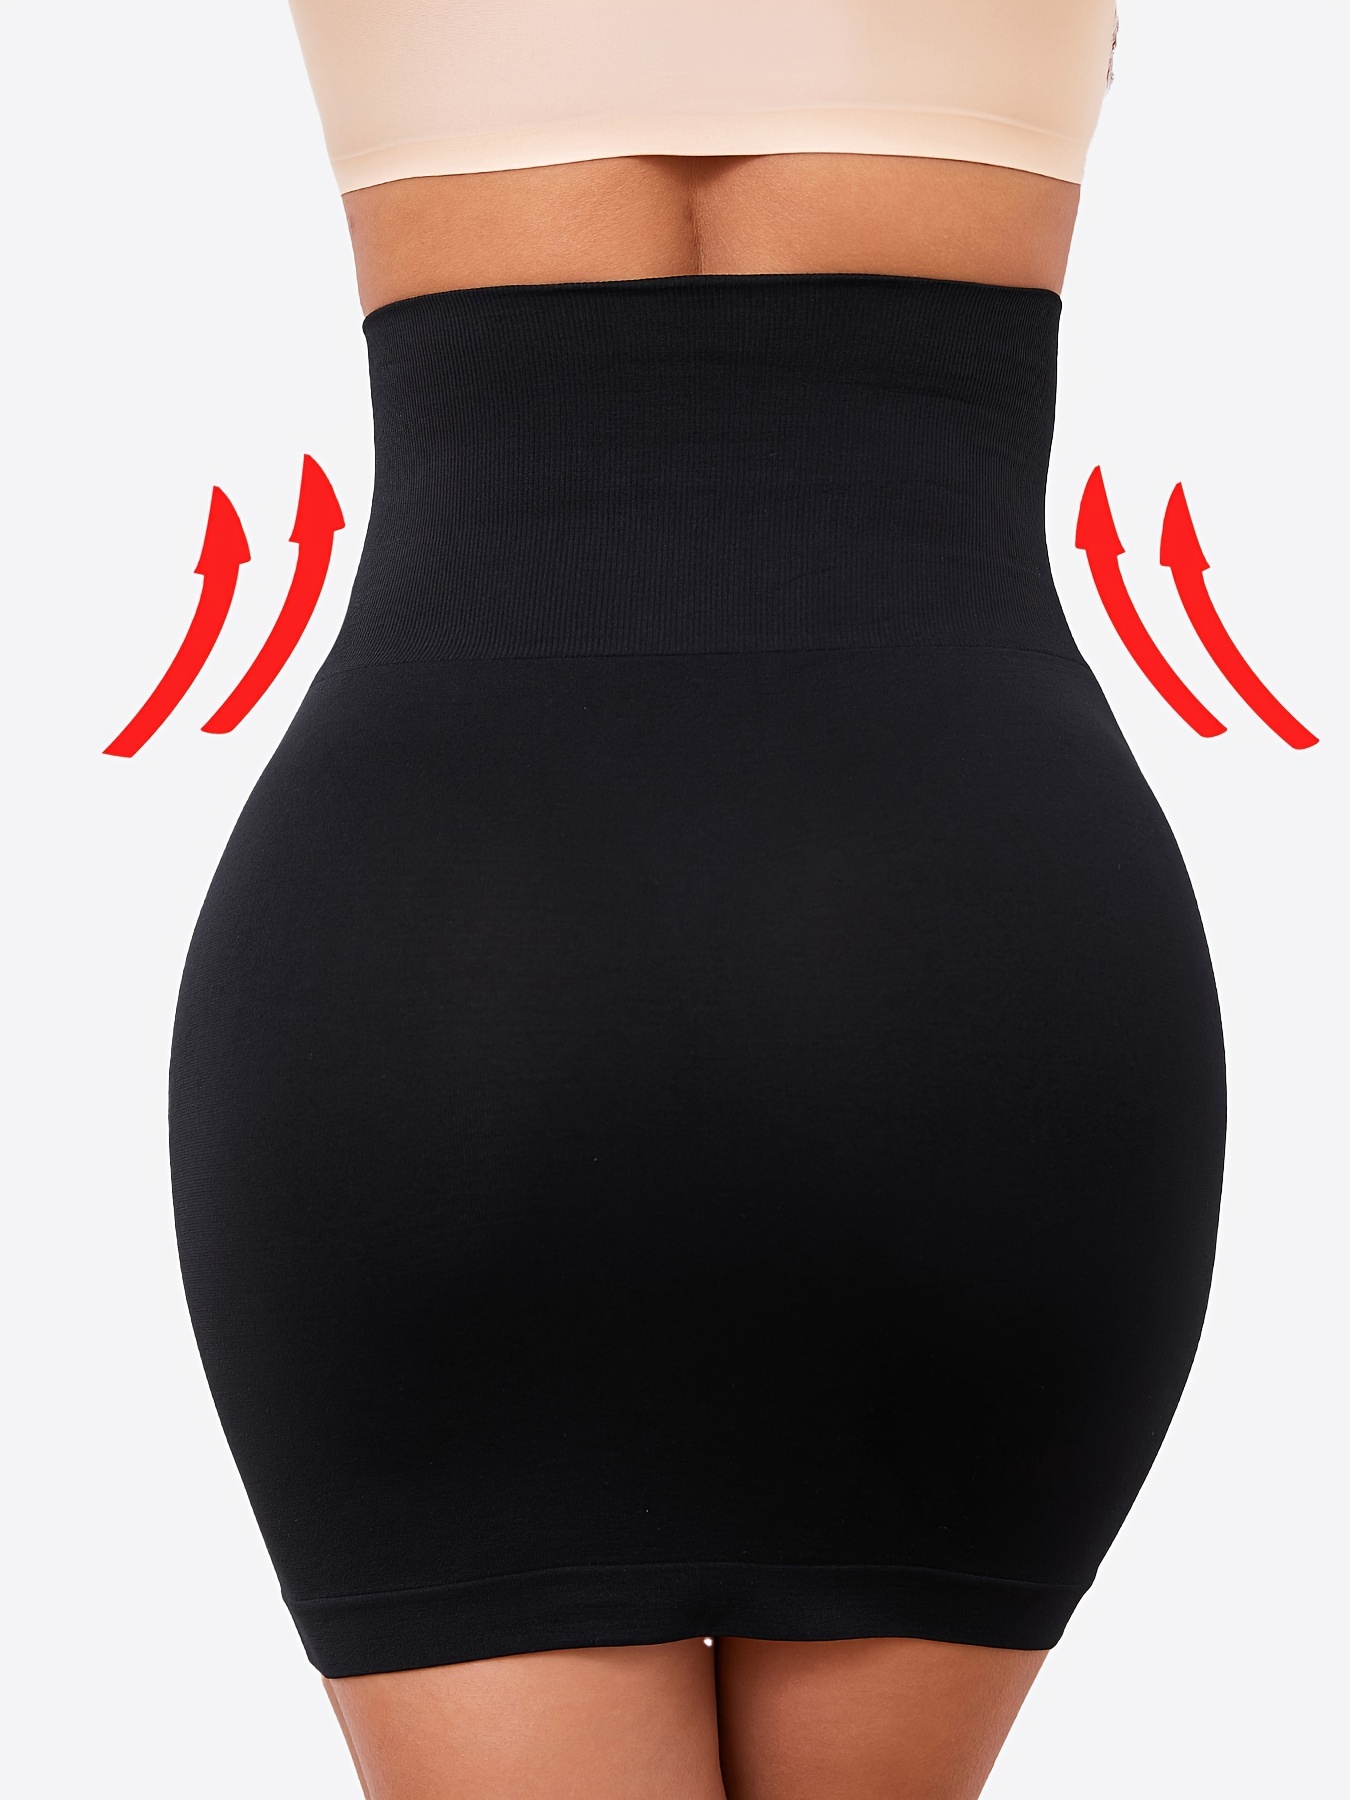 Women Half Slip for Under Dresses Tummy Control Body Shaper Seamless Under  Skirt